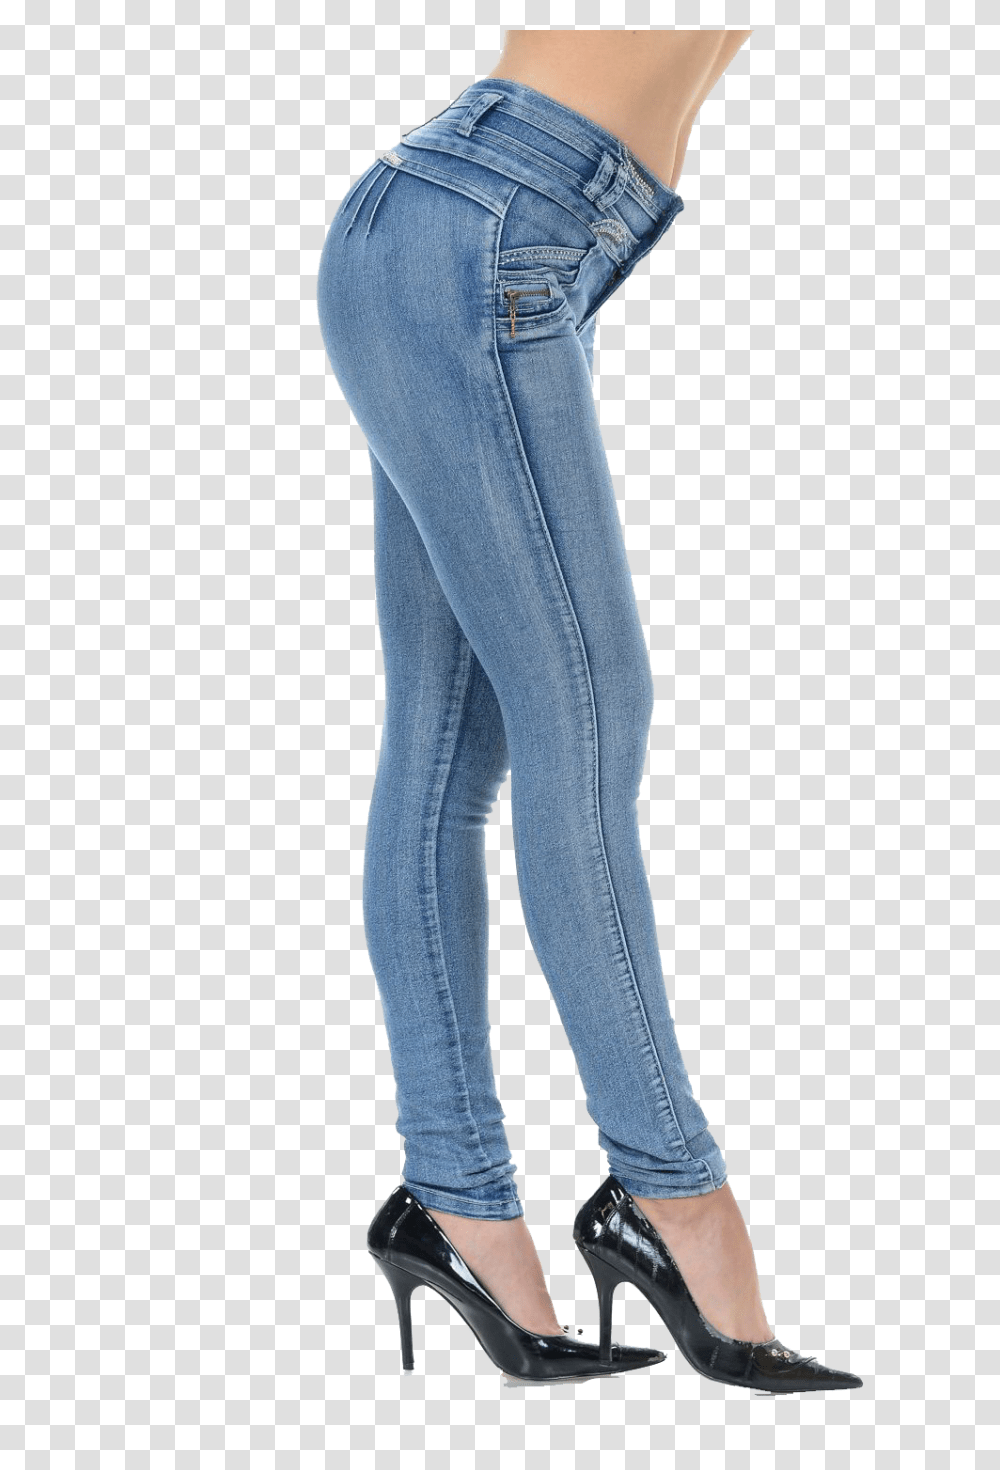 Women Jeans Hd Background, Pants, Apparel, Denim Transparent Png